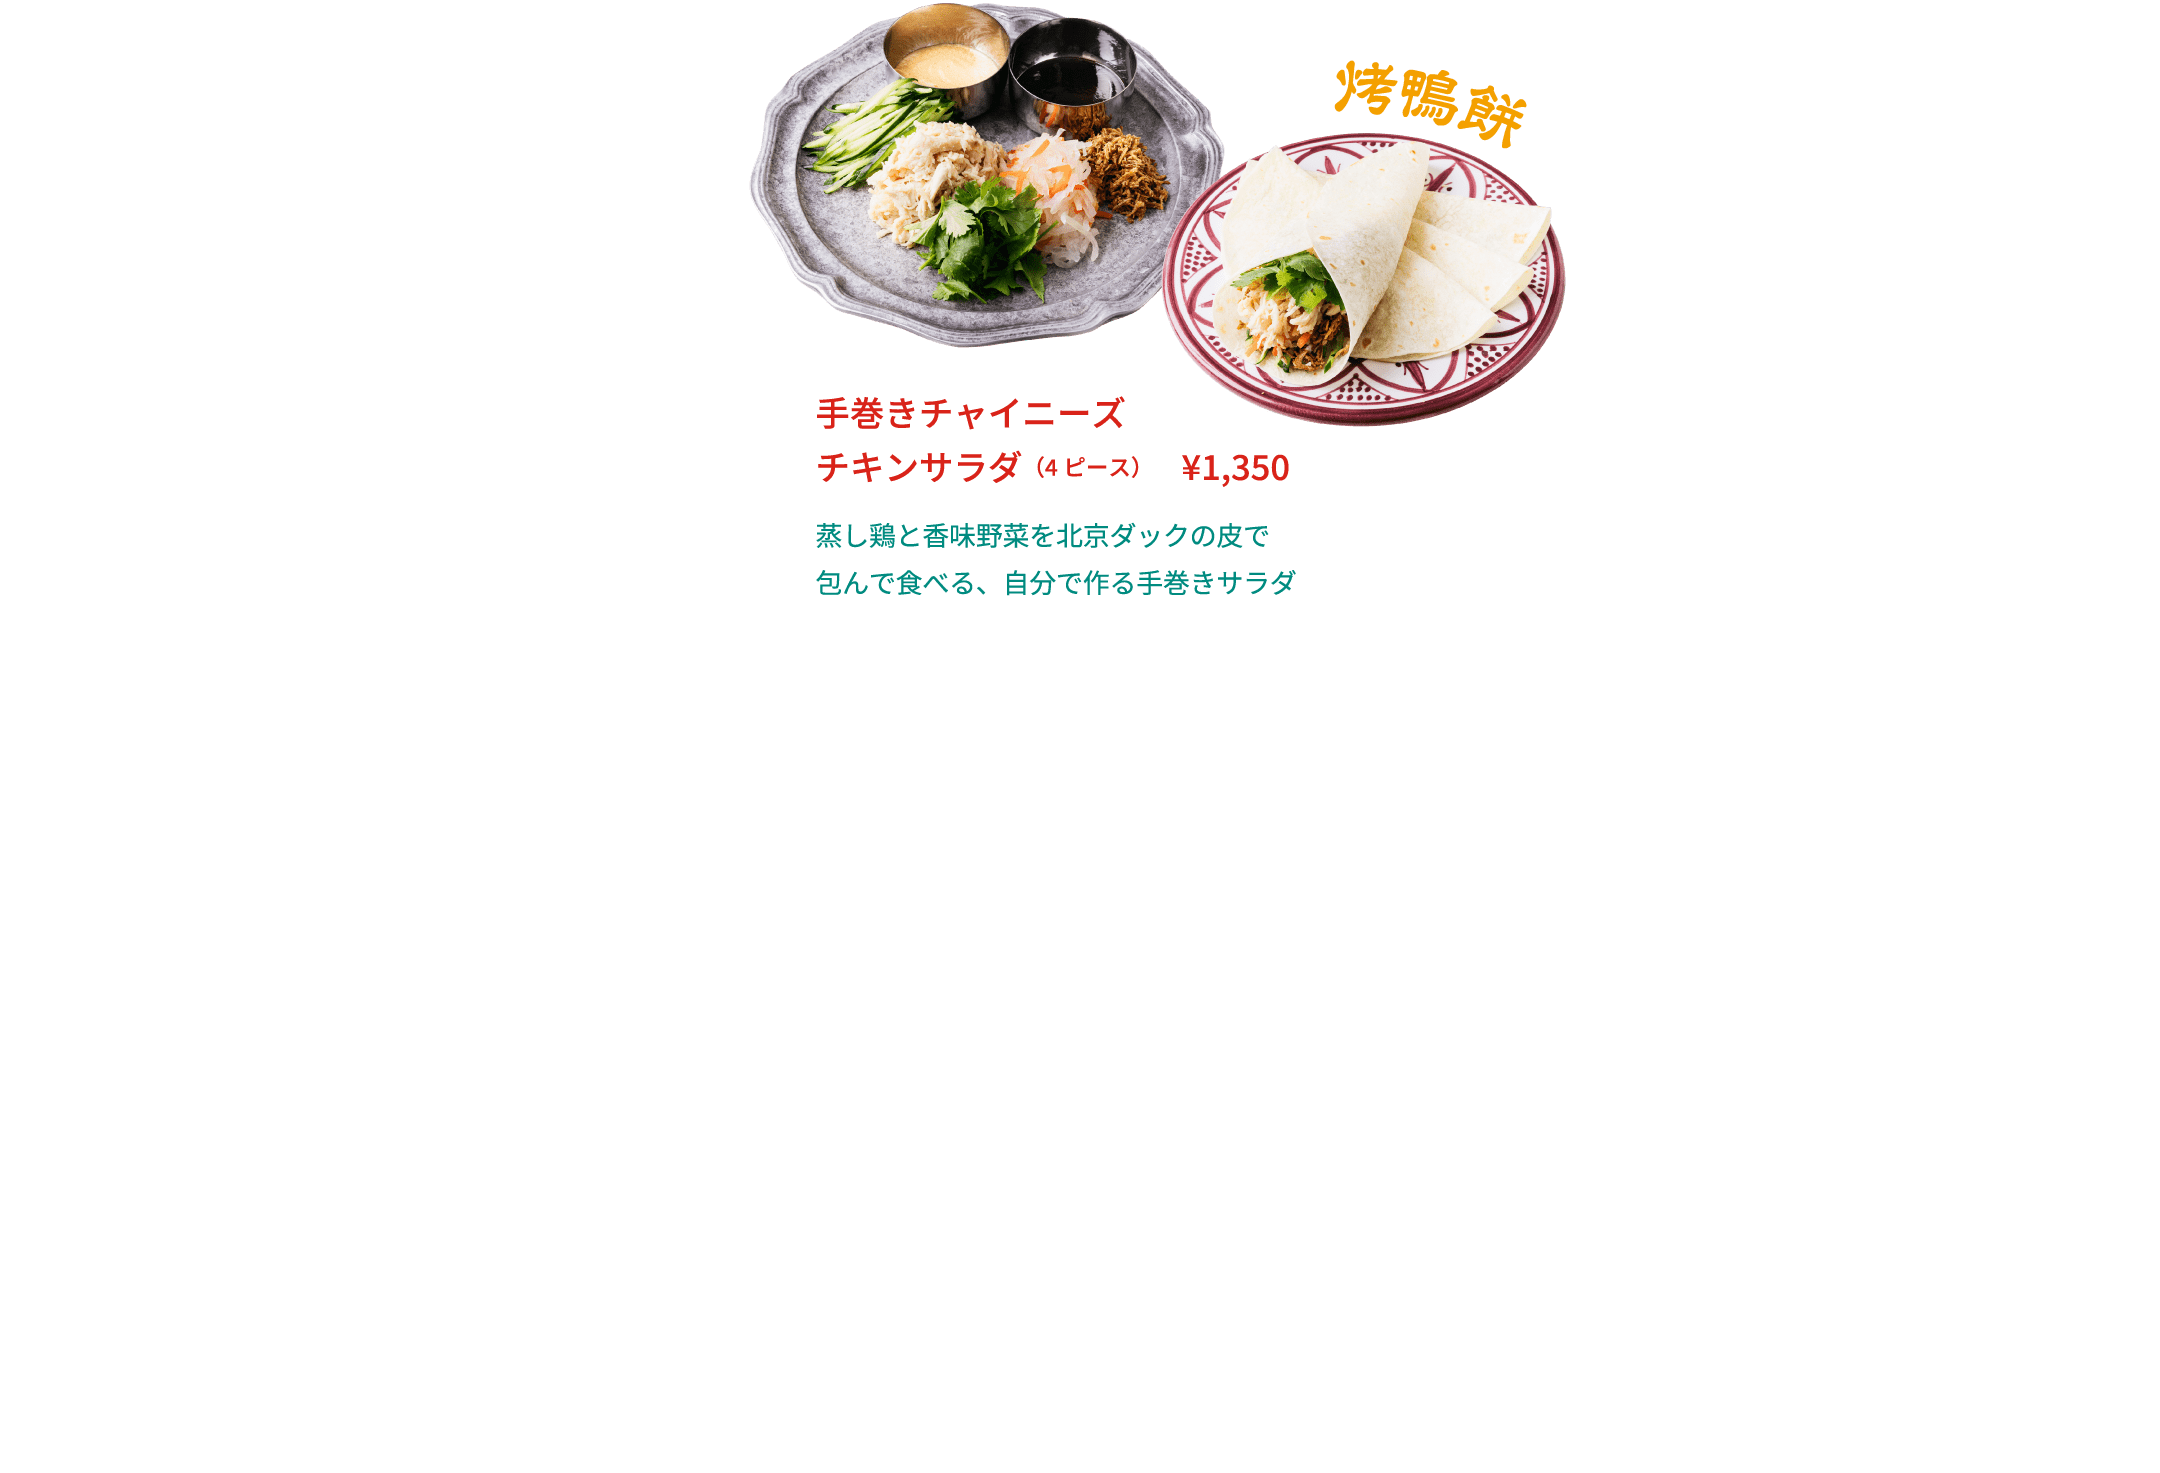 手巻きチャイニーズチキンサラダ（4ピース） ¥1,350 蒸し鶏と香味野菜を北京ダックの皮で包んで食べる、自分で作る手巻きサラダ